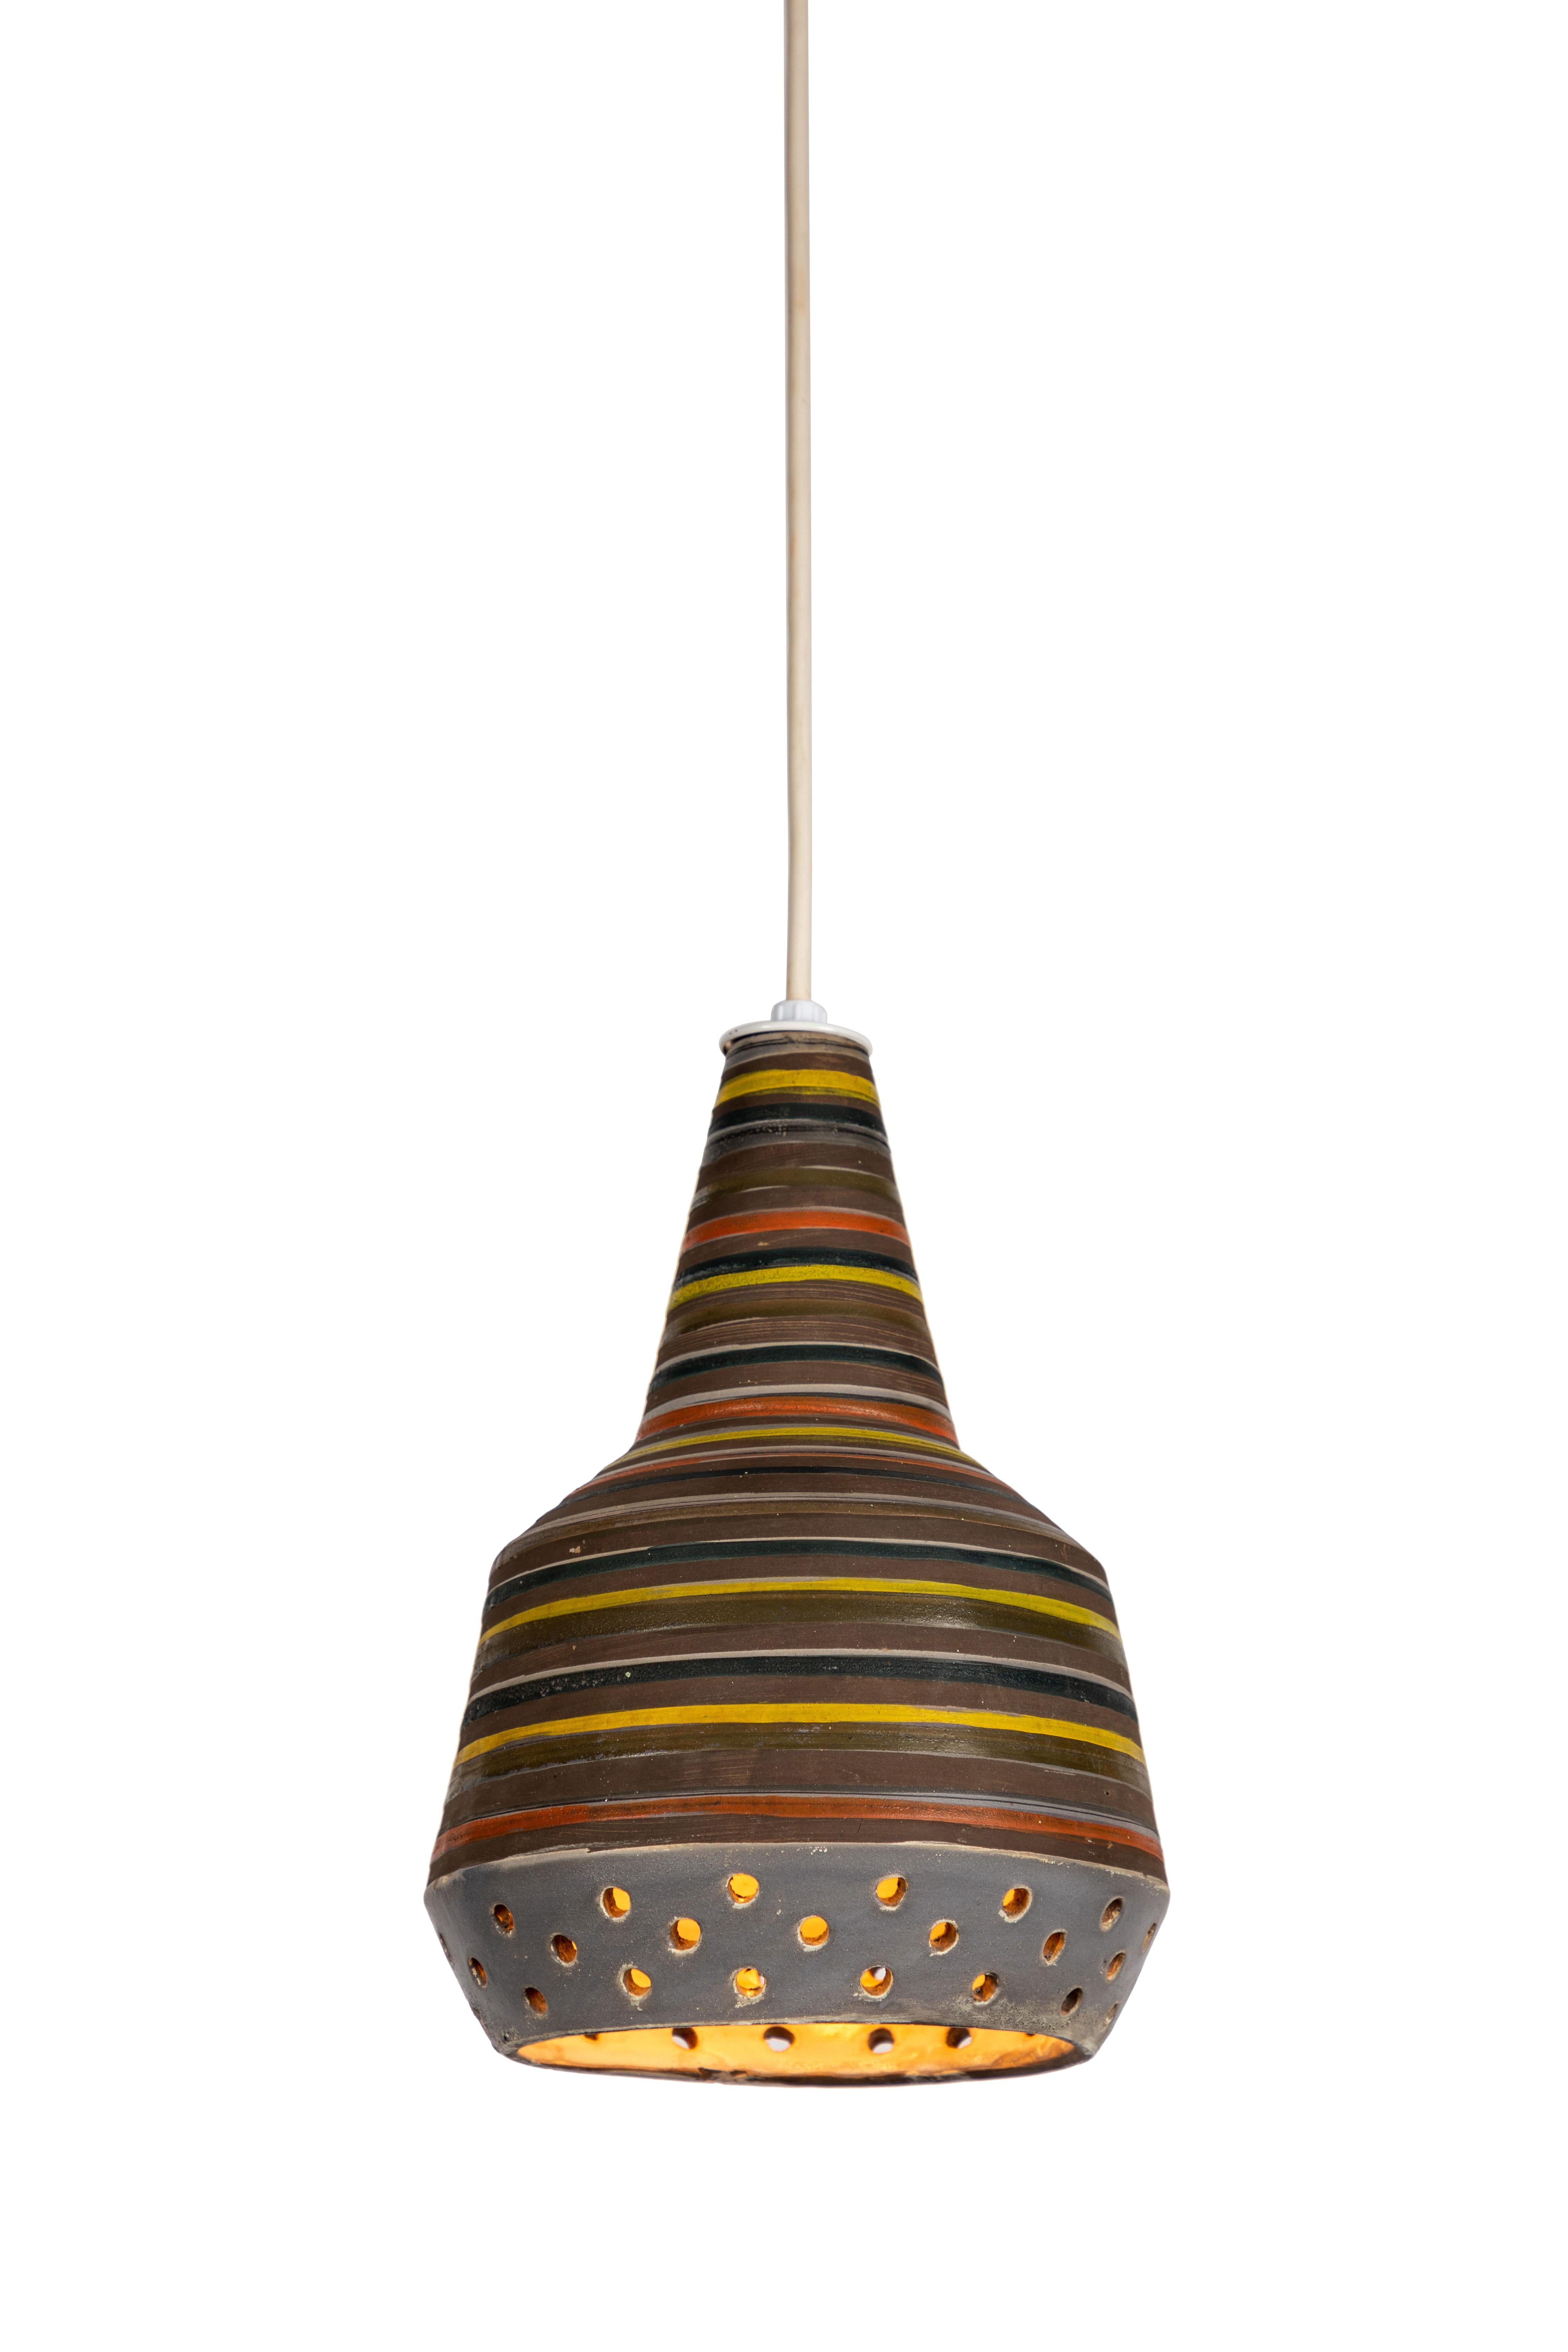 Glazed 1950s Aldo Londi Ceramic Bitossi Pendant Lamp for Italian Raymor For Sale